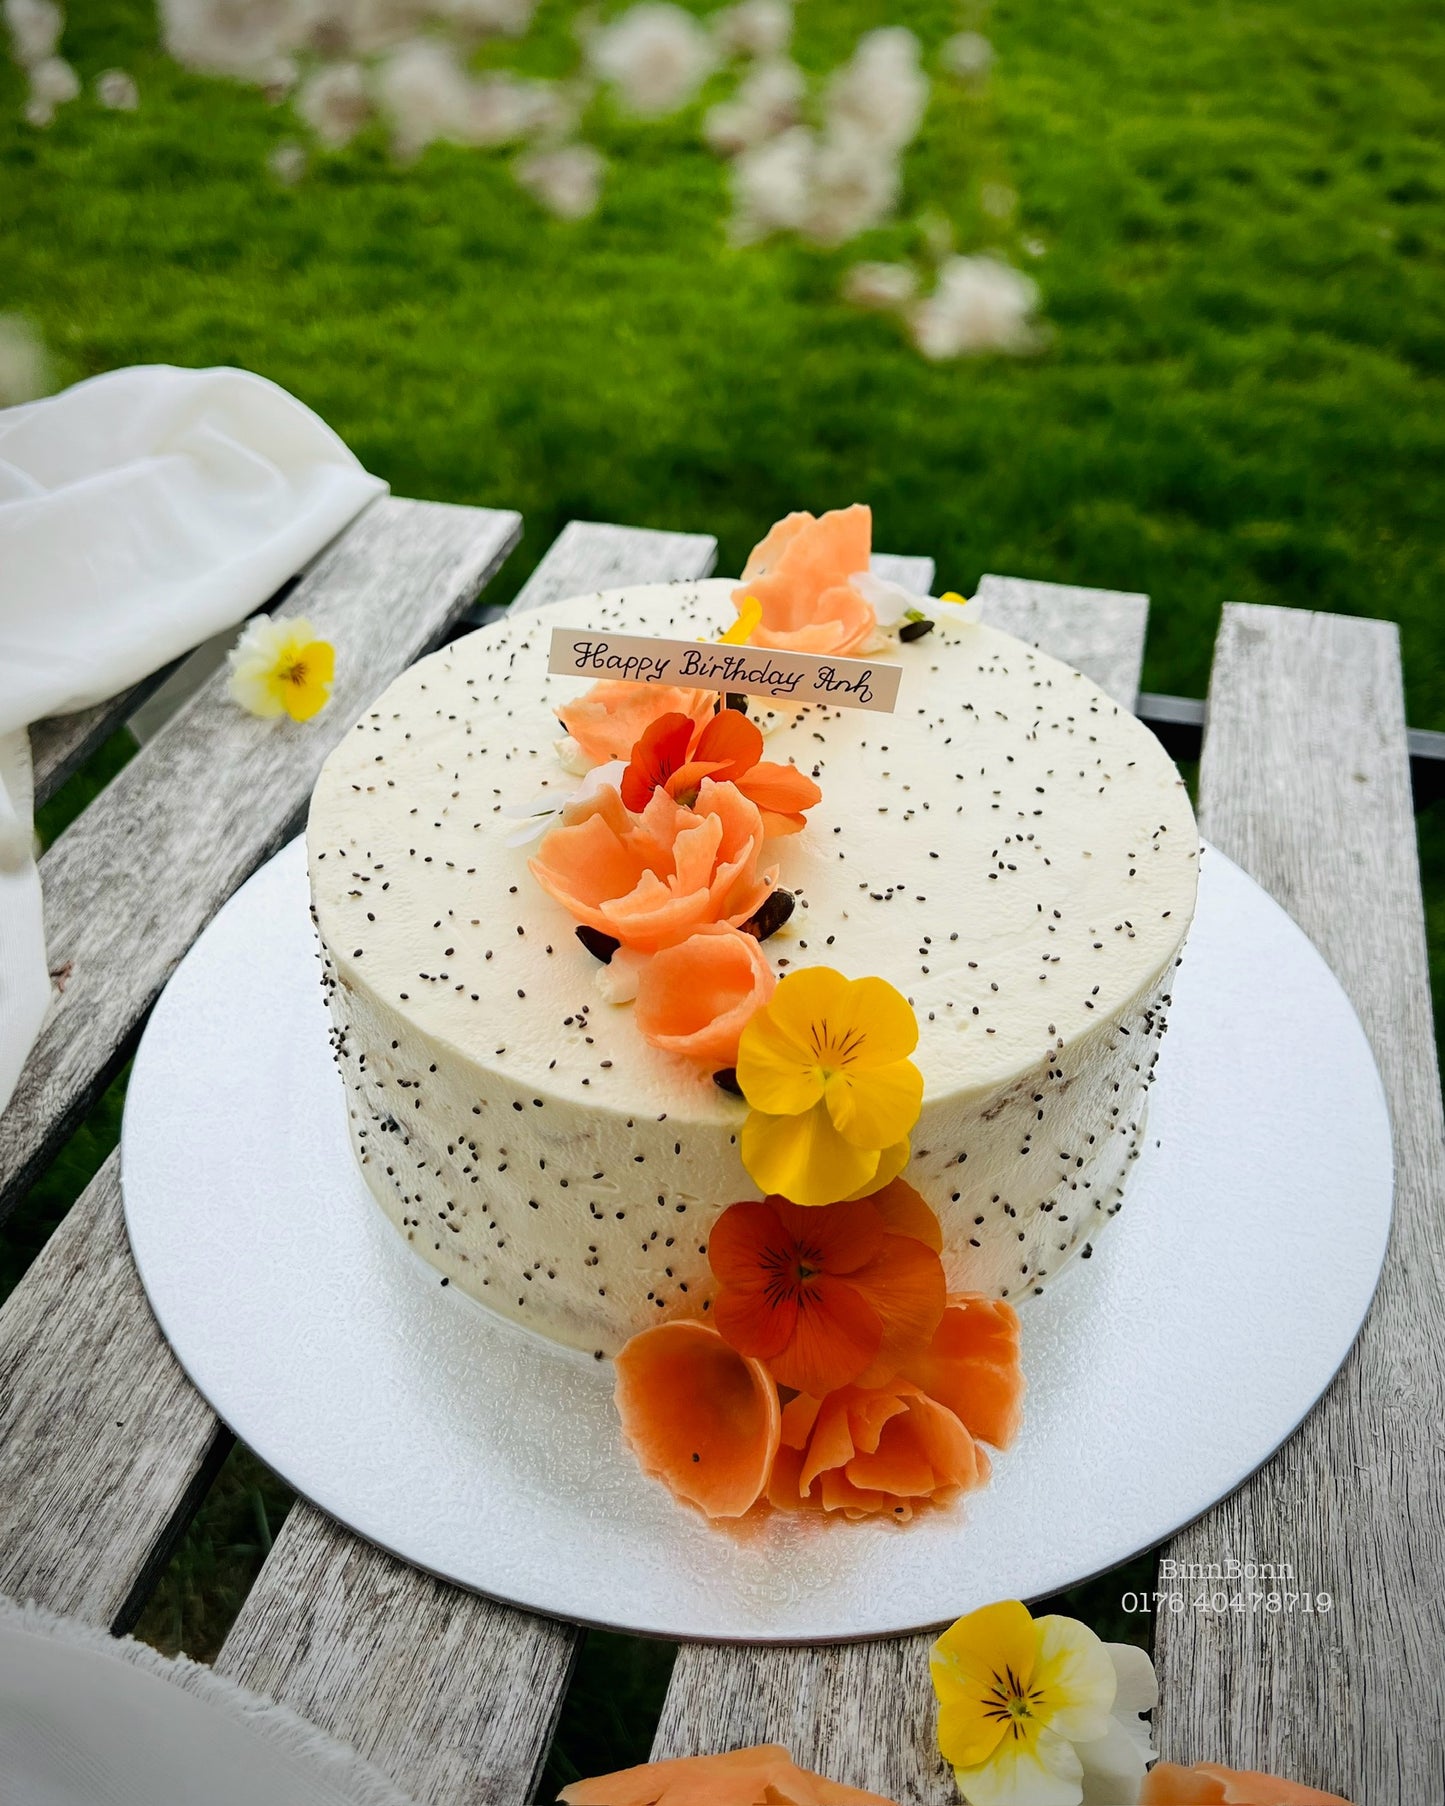 7. Torte "Carrot Cake" mit Möhren Kürbiskernen und Frischkäse 22 cm